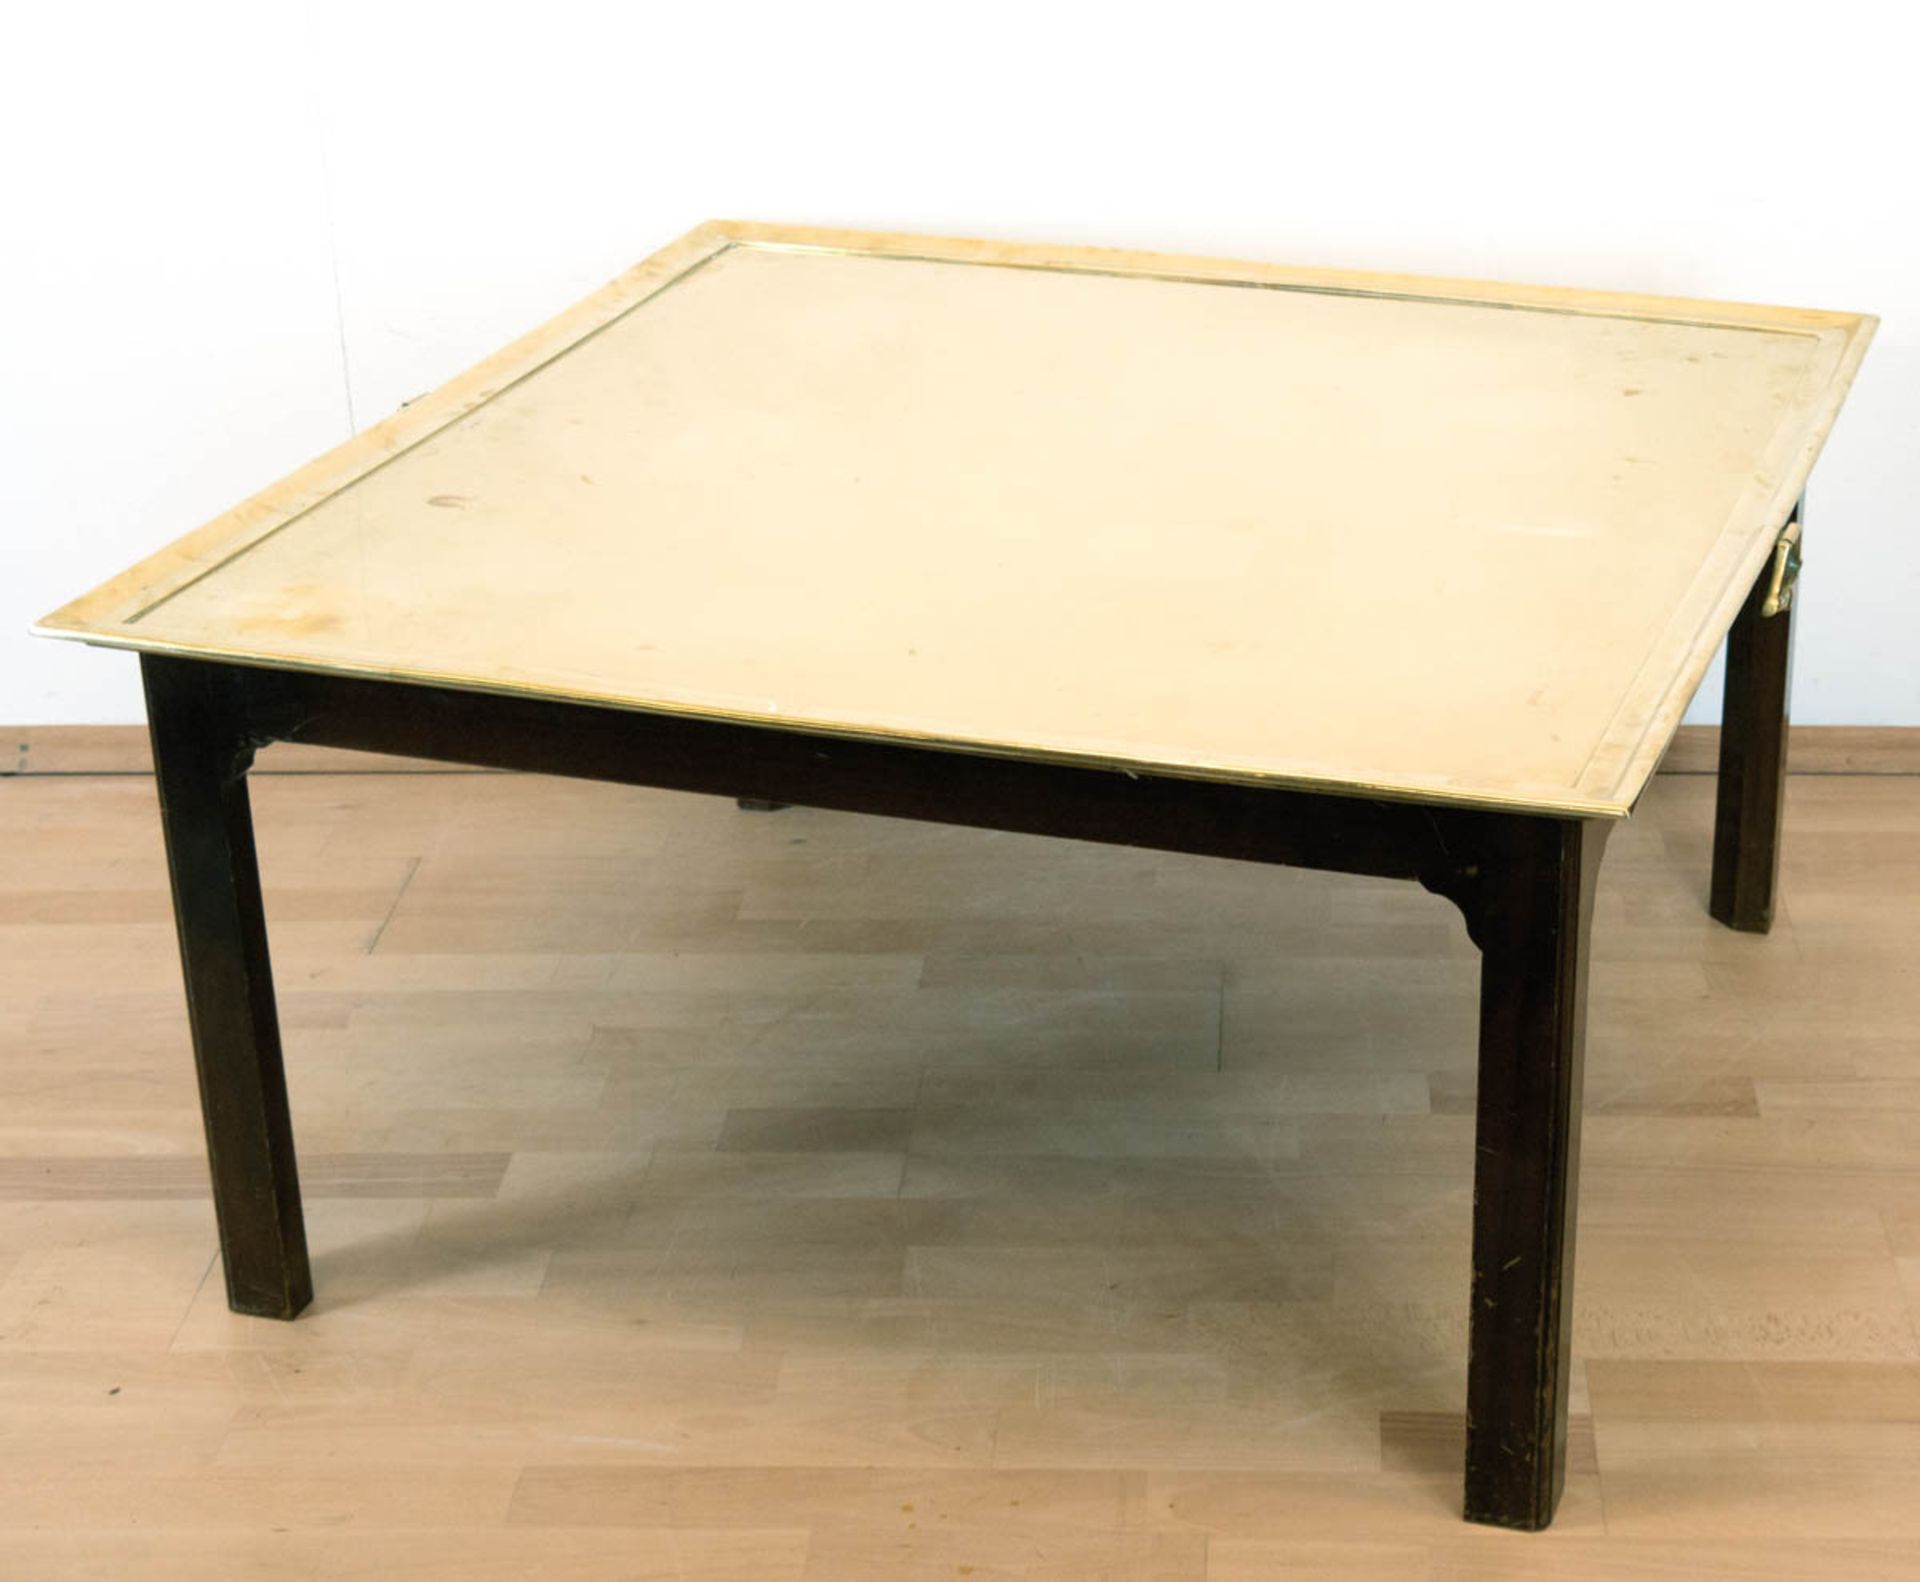 Tablett-Tisch mit schwerer Messingplatte mit 2 seitl. Handhaben, Mahagoni-Fußgestell